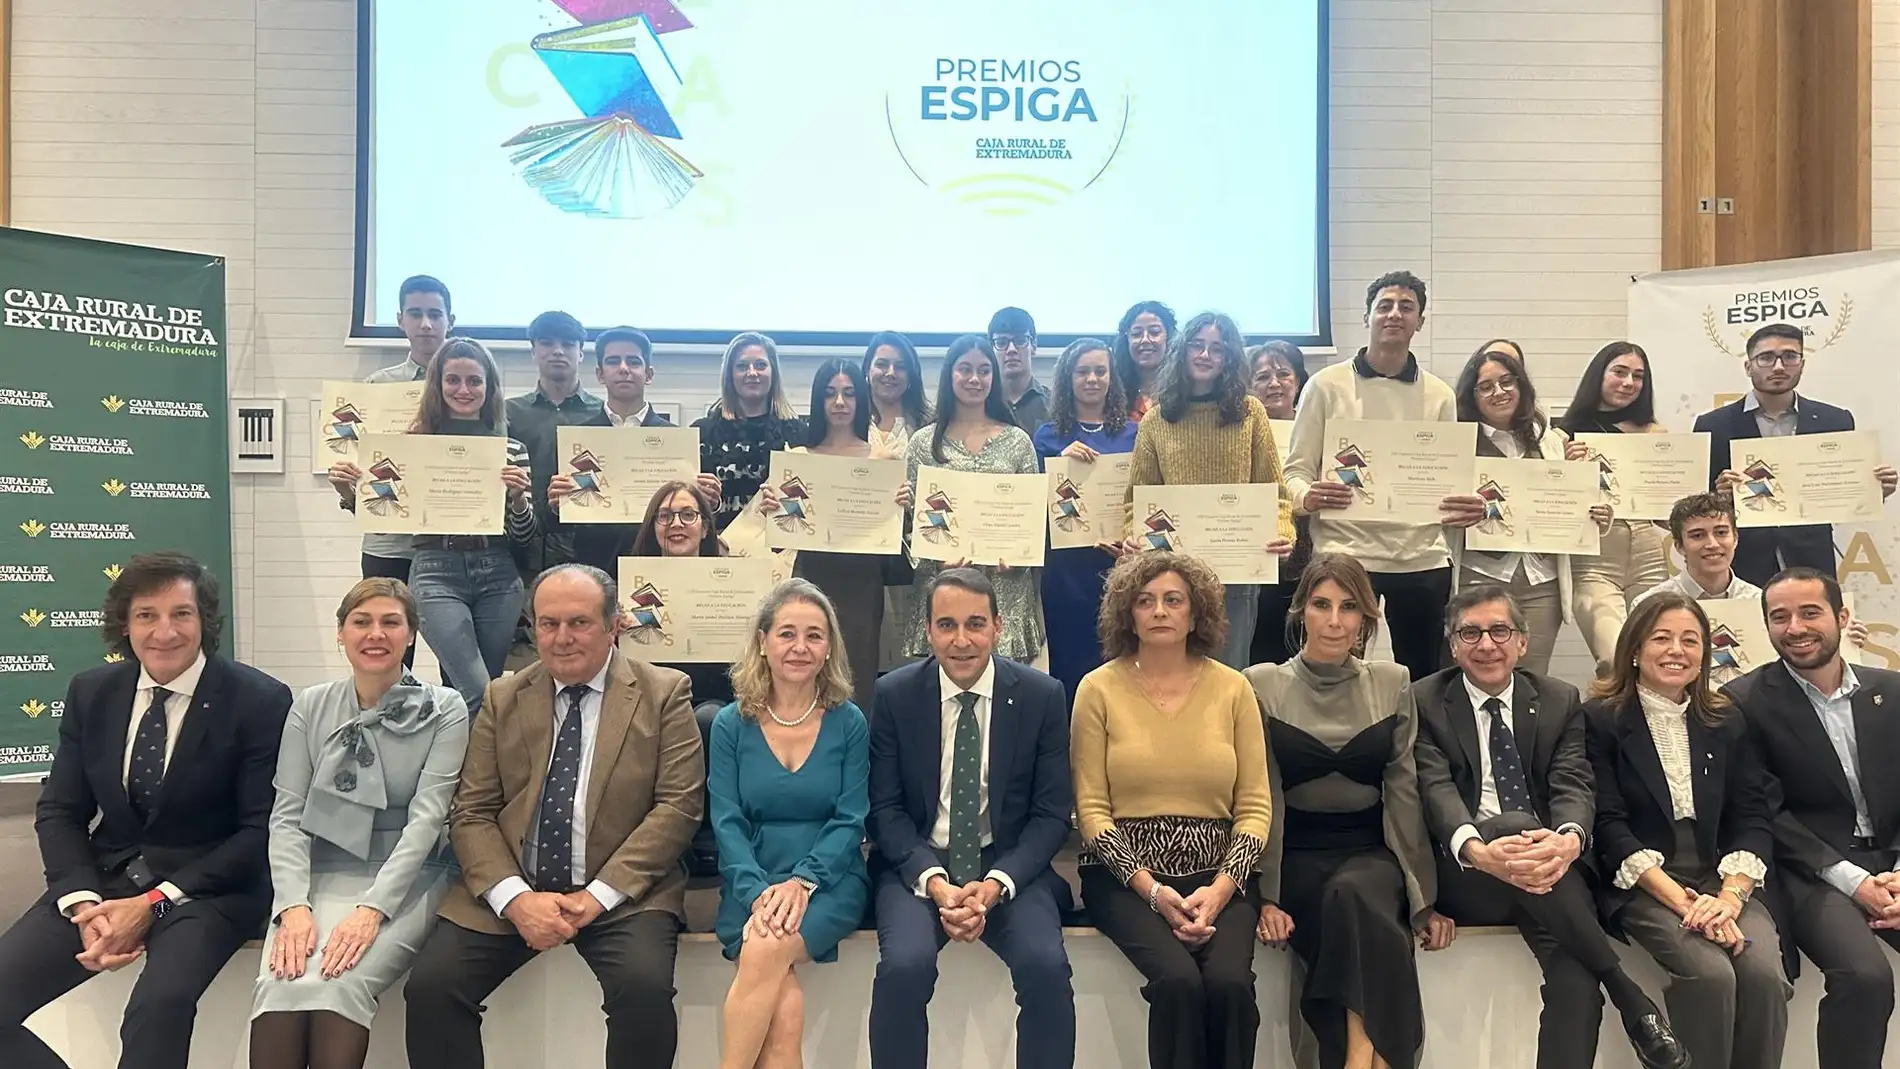 Caja Rural de Extremadura beca a los 20 mejores alumnos de ESO y FP en sus octavas Becas Espiga